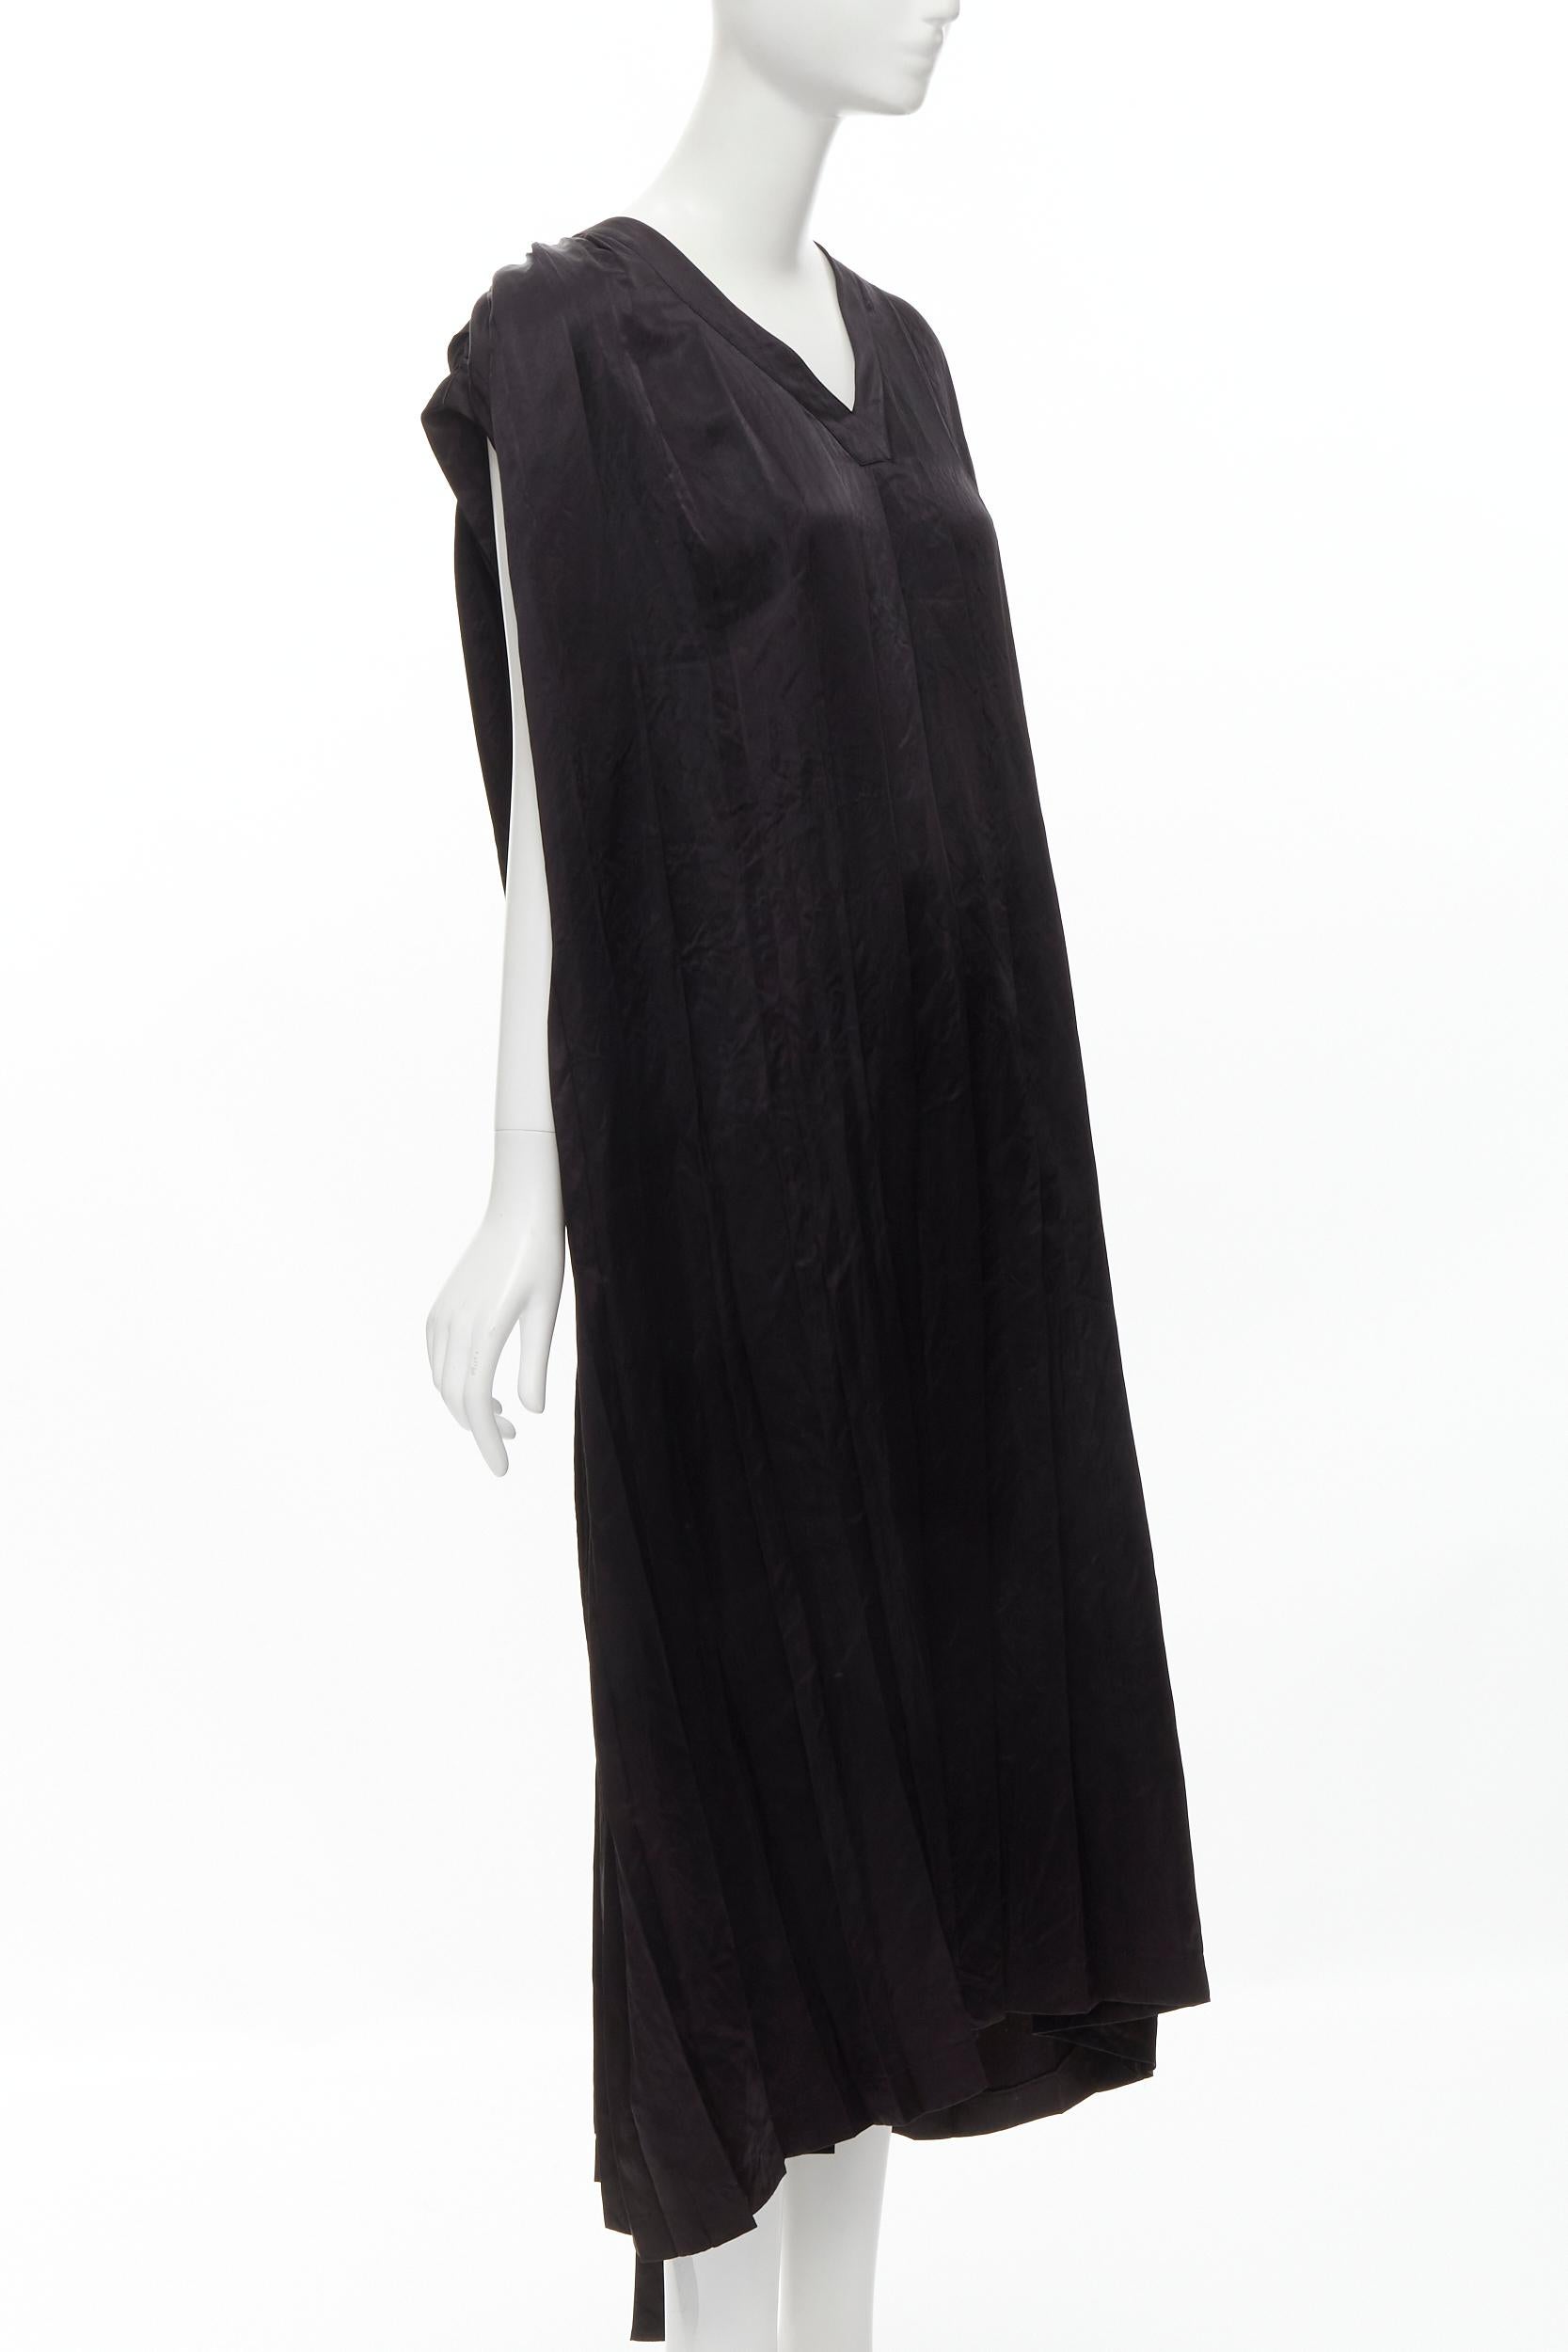 Black COMME DES GARCONS Vintage 1980s black triacetate V-neck oversized belted dress For Sale